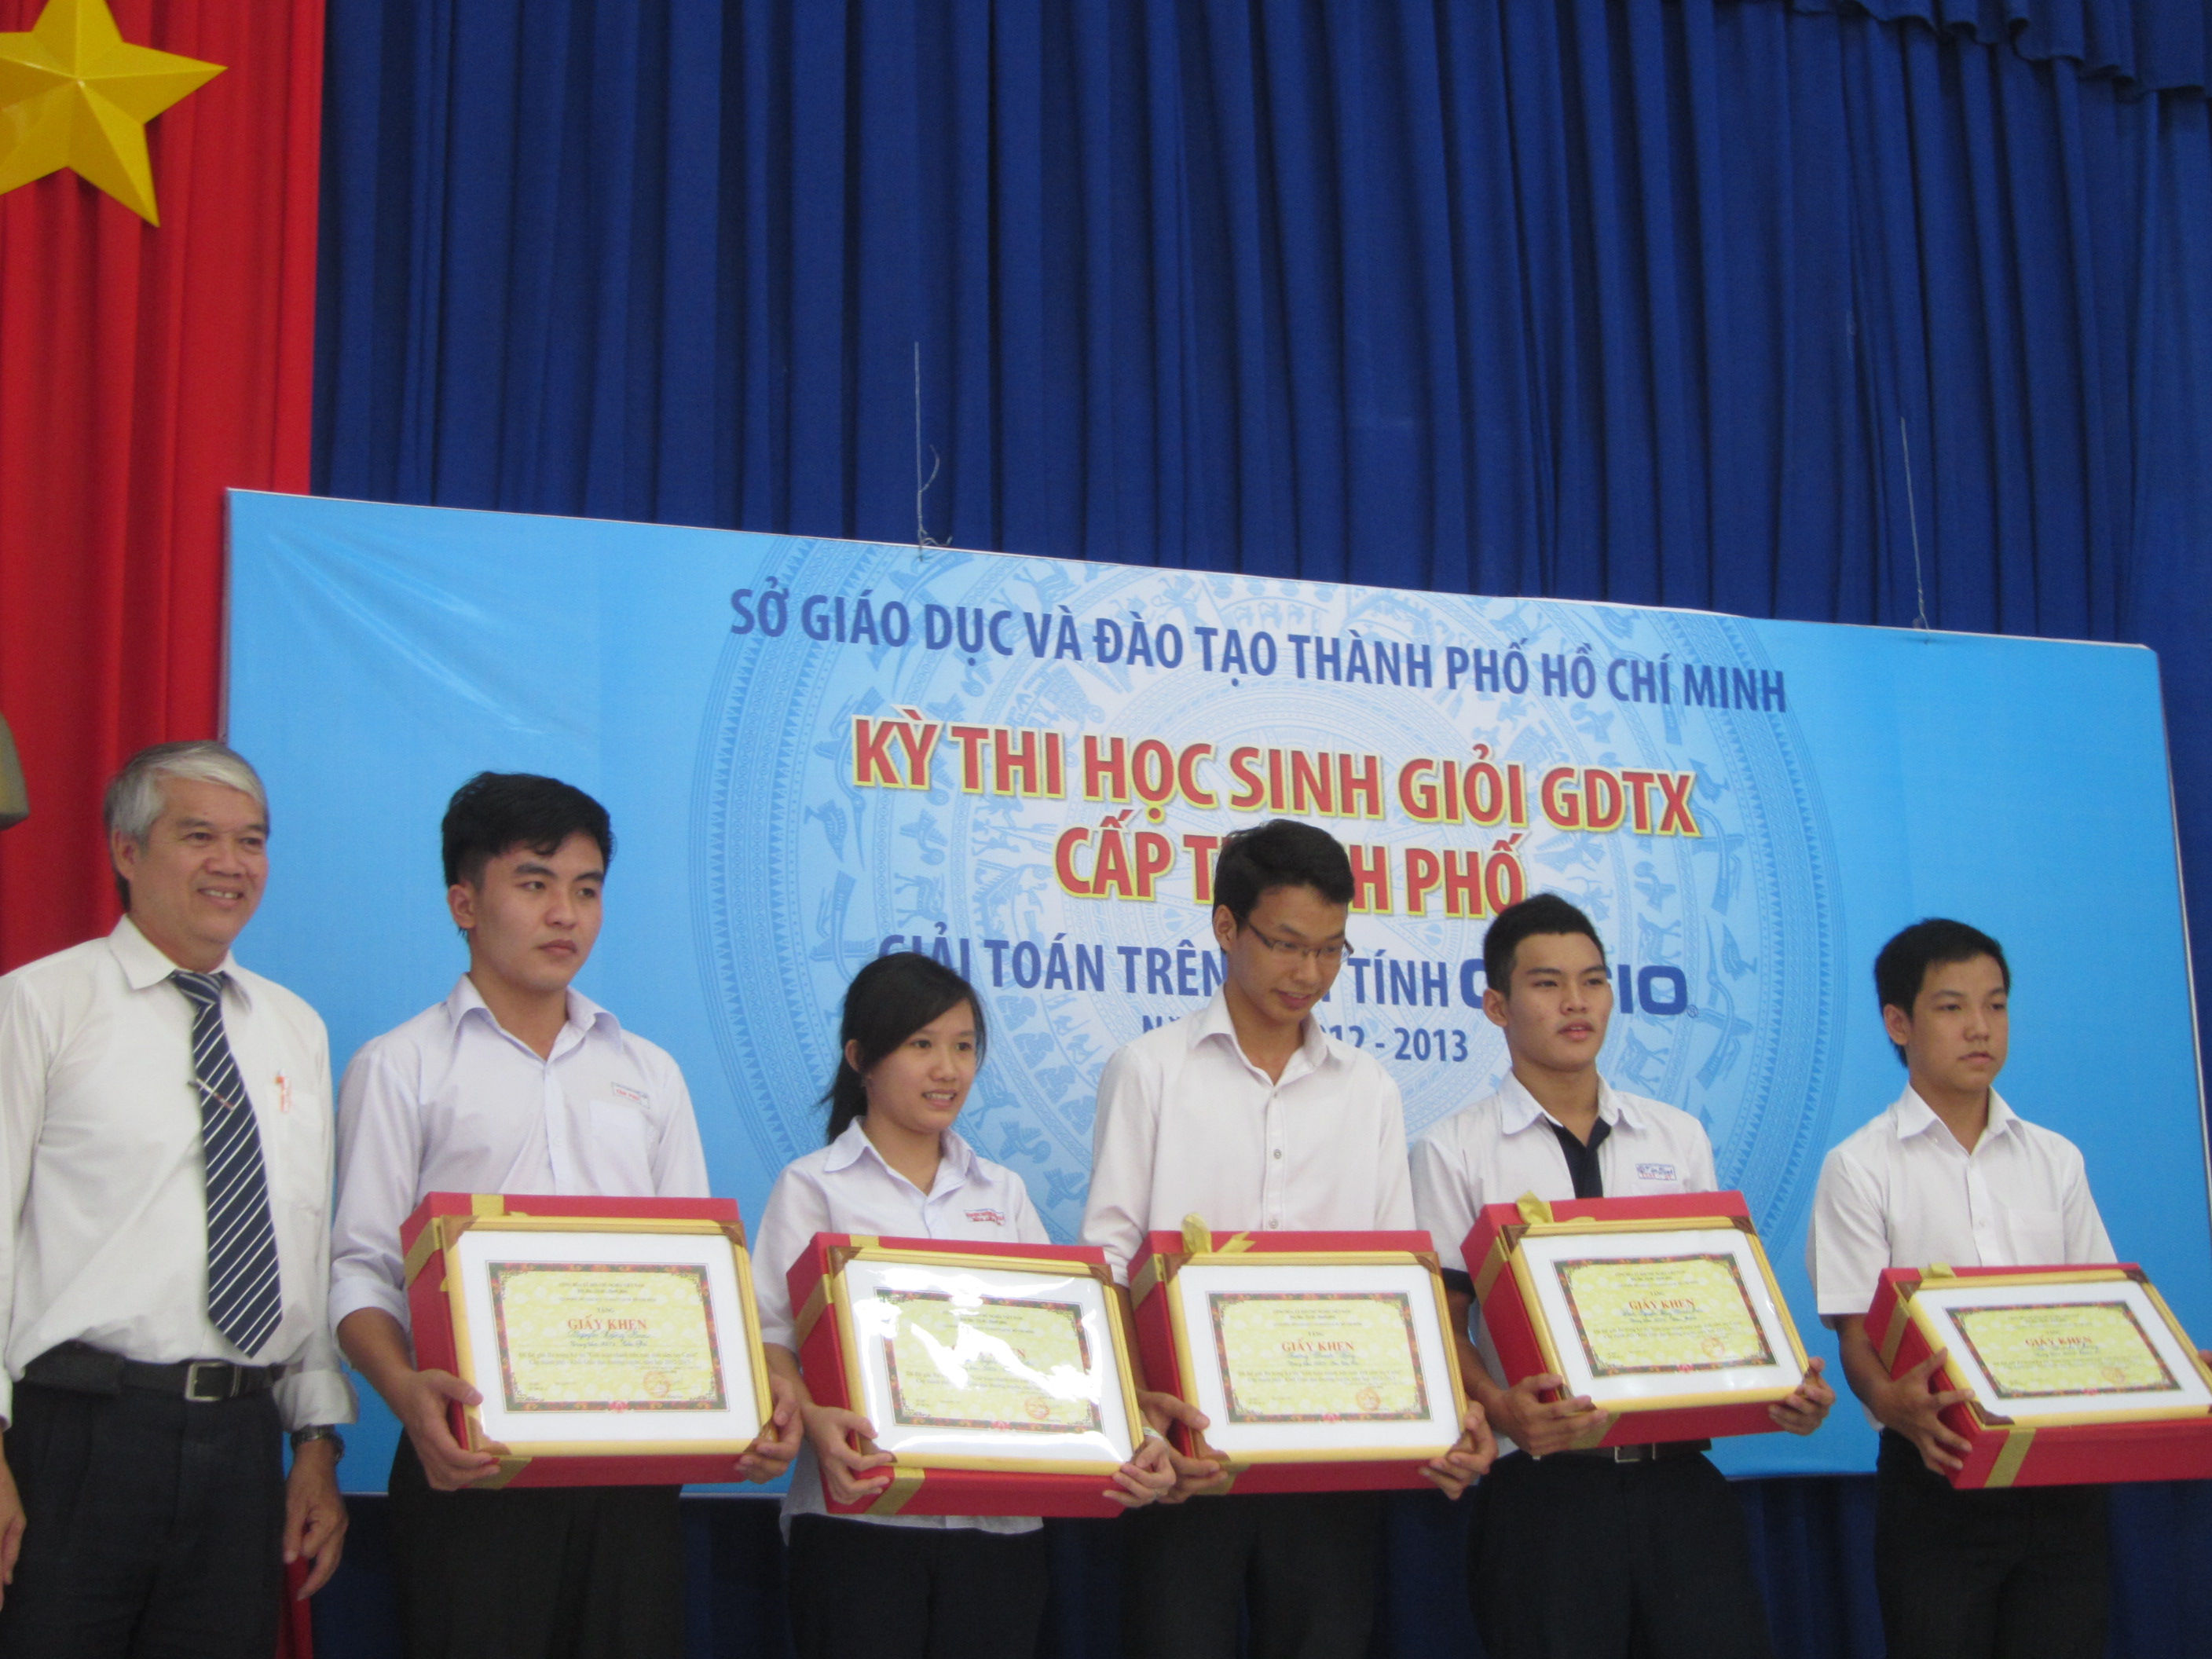 Ông Hoàng Xuân Thắng, cán bộ Sở GD & ĐT TP. HCM trao bằng khen và quà tặng cho 5 thí sinh đoạt giải ba